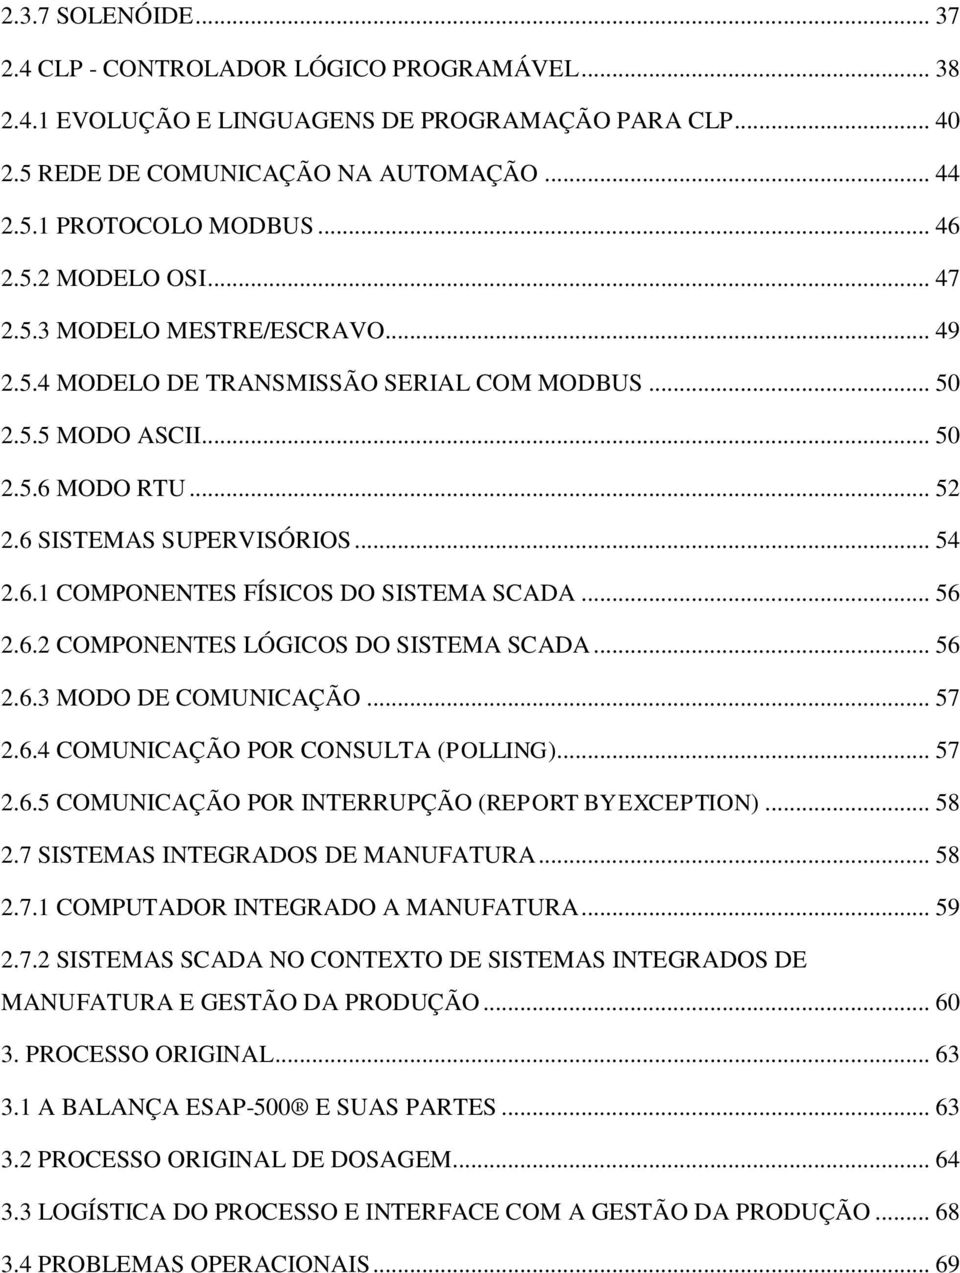 .. 56 2.6.2 COMPONENTES LÓGICOS DO SISTEMA SCADA... 56 2.6.3 MODO DE COMUNICAÇÃO... 57 2.6.4 COMUNICAÇÃO POR CONSULTA (POLLING)... 57 2.6.5 COMUNICAÇÃO POR INTERRUPÇÃO (REPORT BY EXCEPTION)... 58 2.